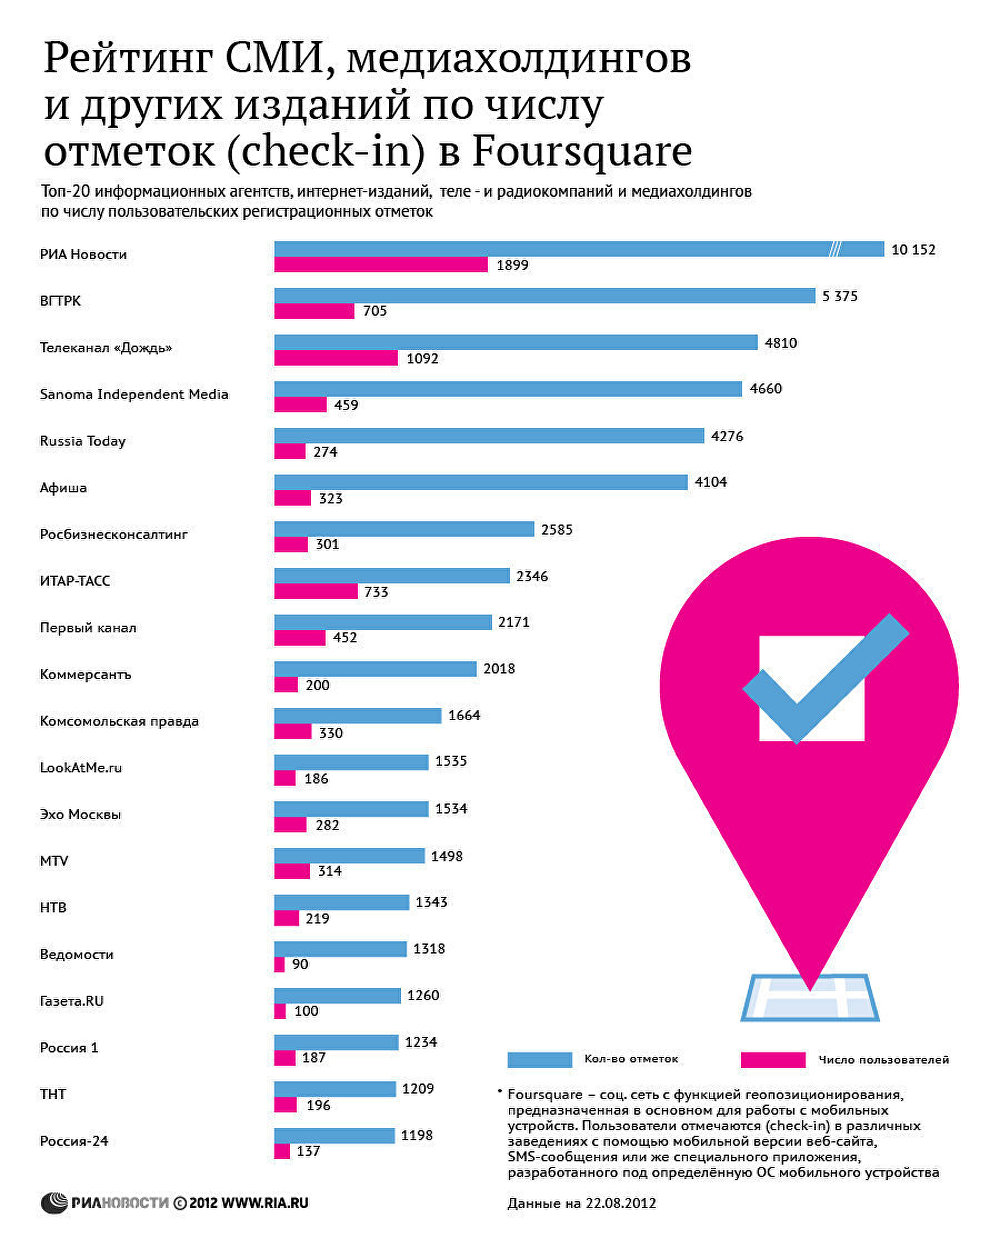 Рейтинг СМИ, медиахолдингов и других изданий по числу отметок (check-in) в Foursquare